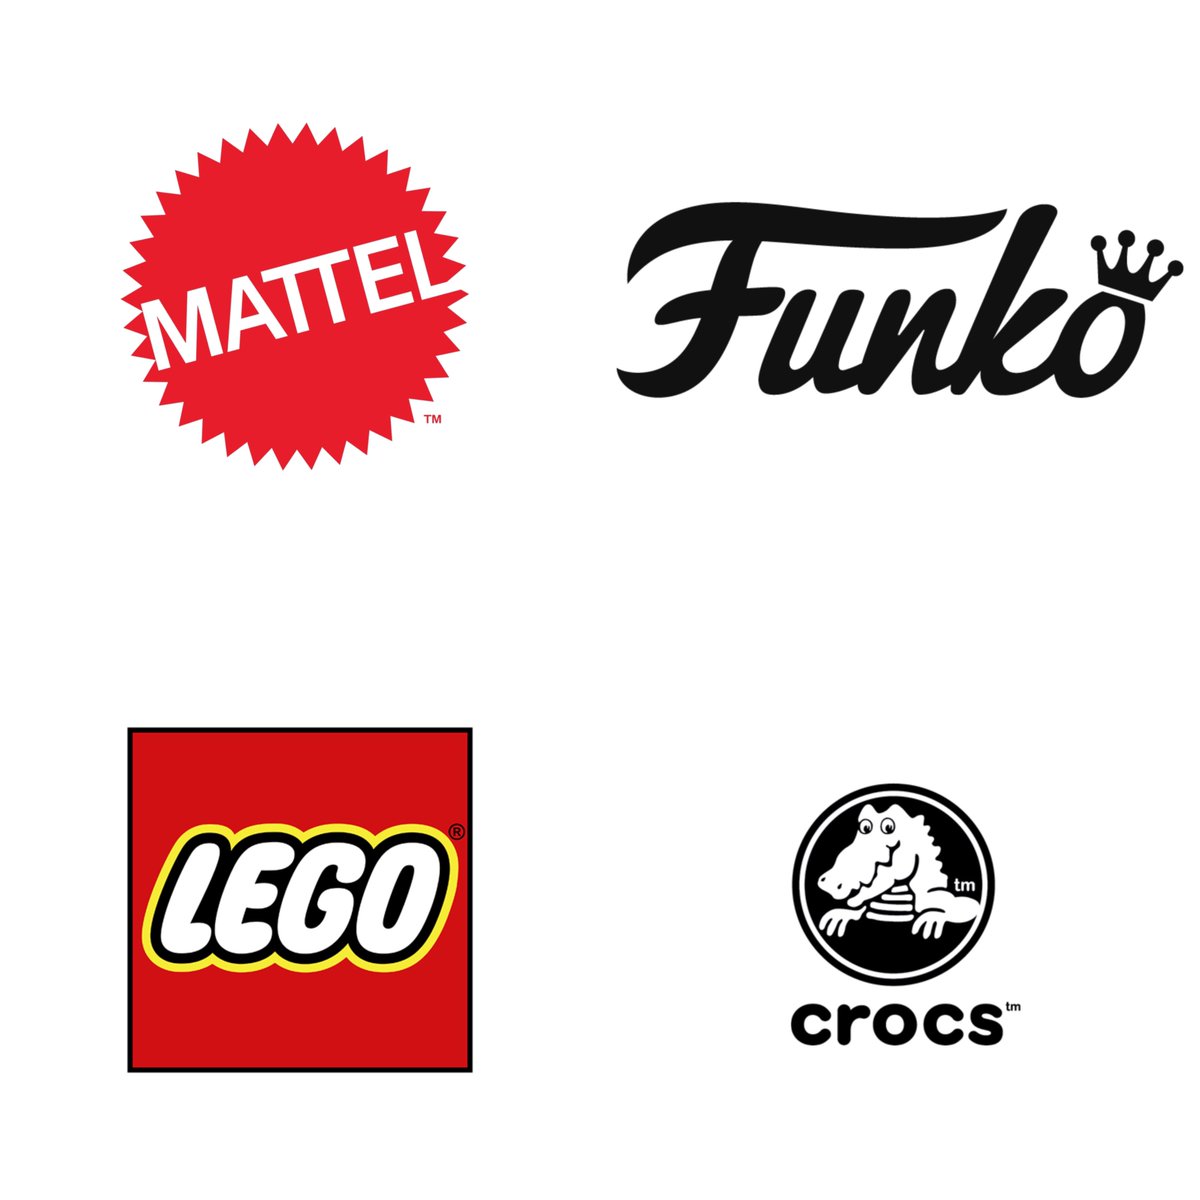 🚨 Confira algumas marcas que lançarão produtos de “Wicked”:

- Funko
- Mattel 
- LEGO
- Crocs
- Hasbro
- Build-A-Bear
- LUSH, e muitas outras…